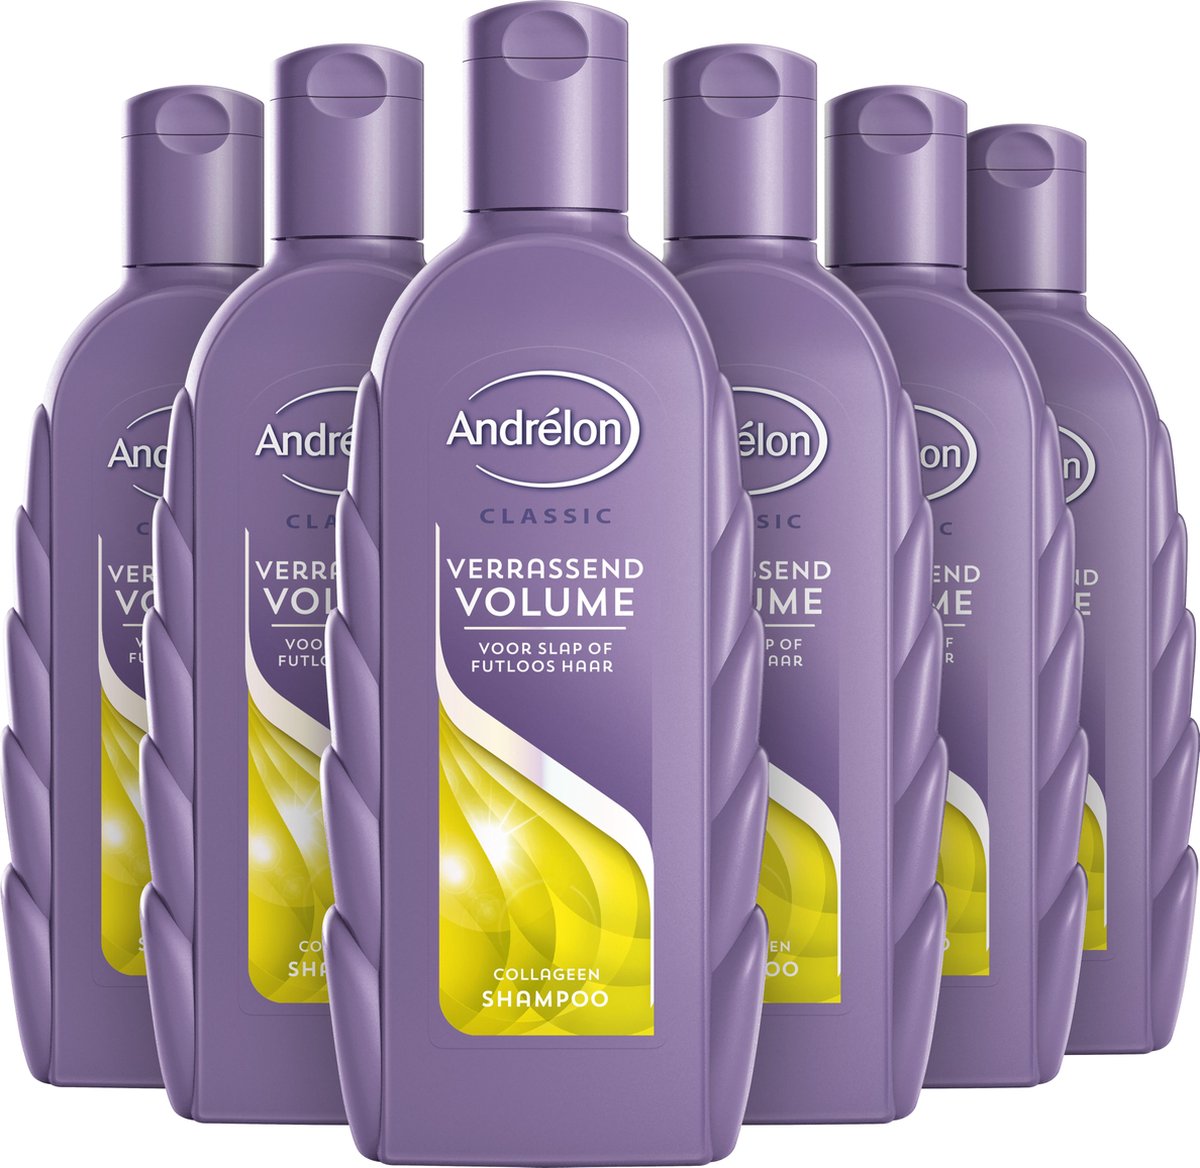 Andrelon Shampoo Verrassend Volume Voordeelverpakking 6x300ml